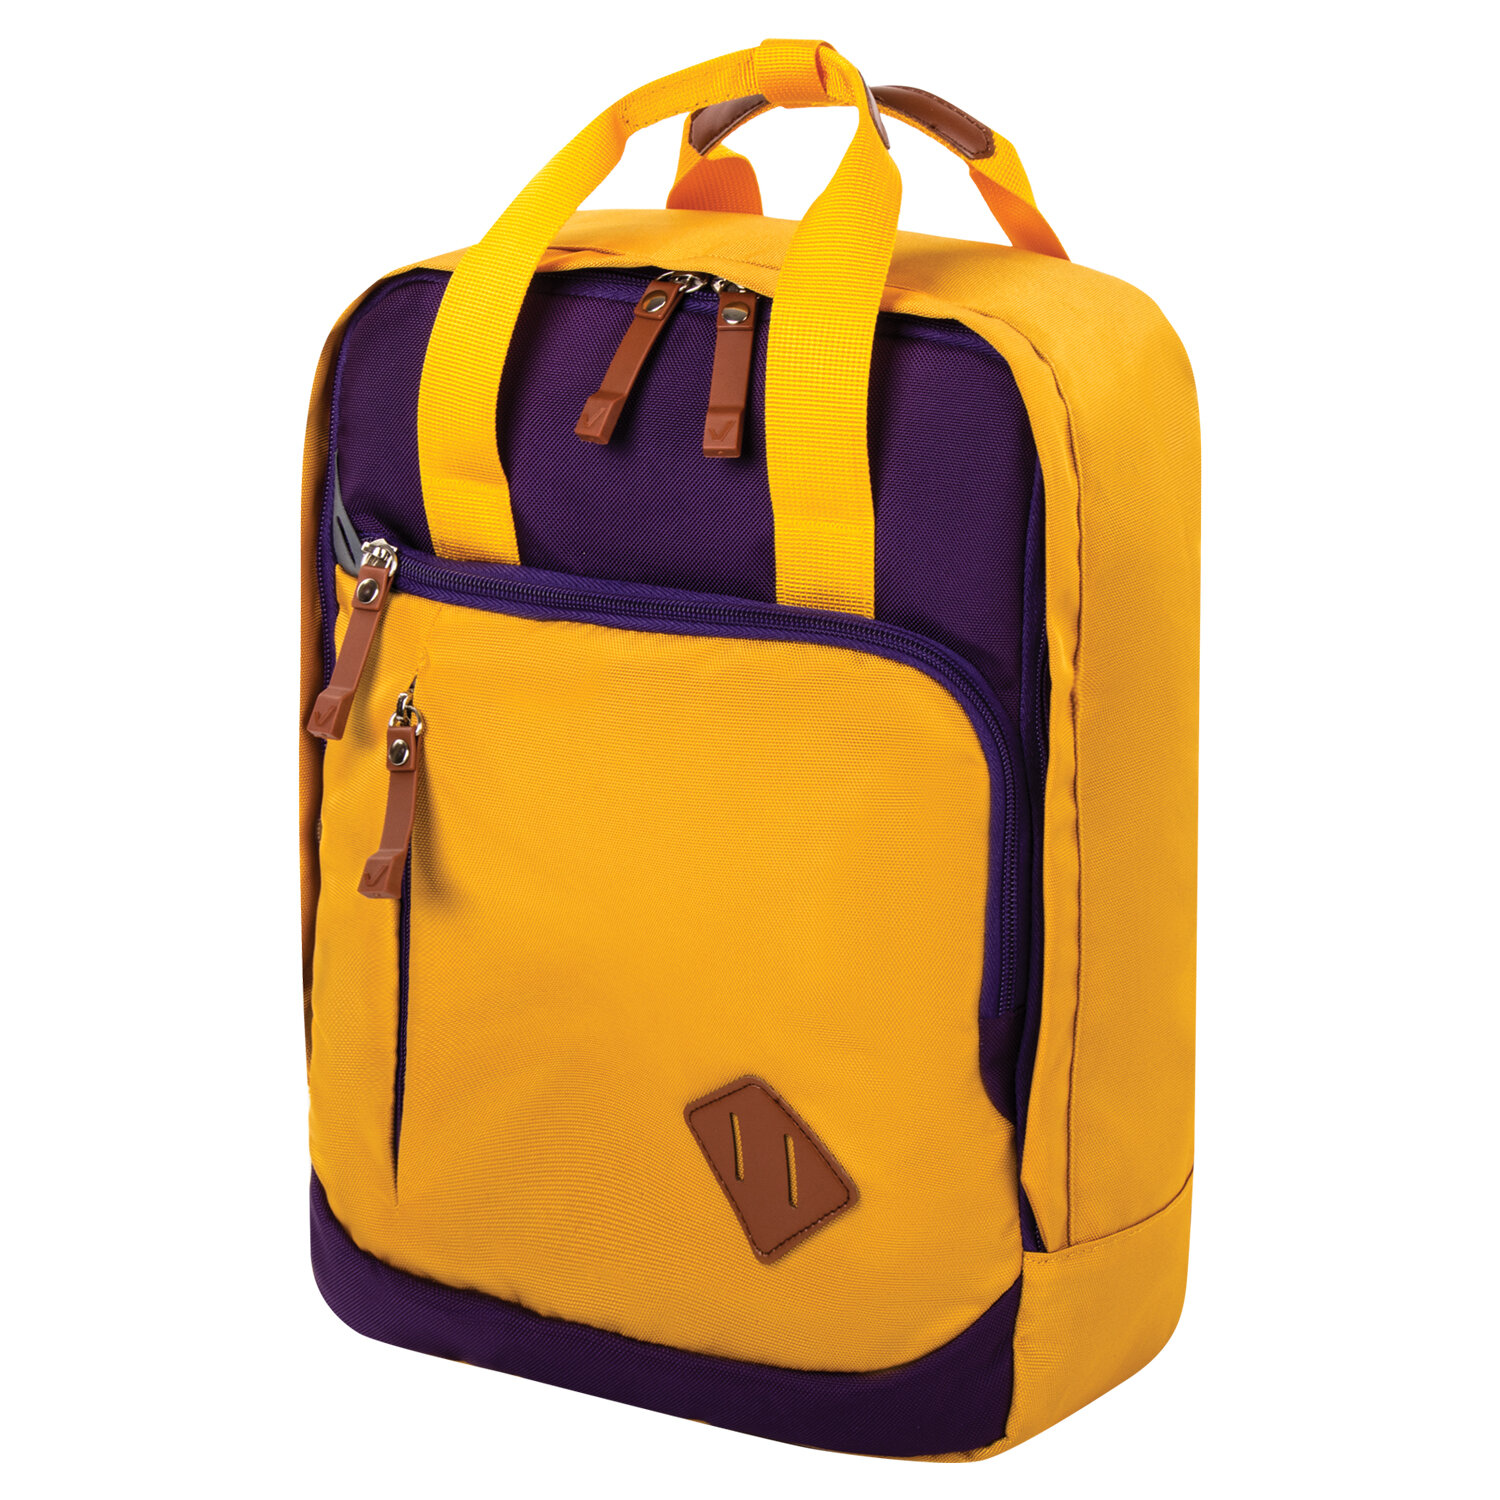 Рюкзак детский Brauberg Friendly, горчично-фиолетовый, 37*26*13 см